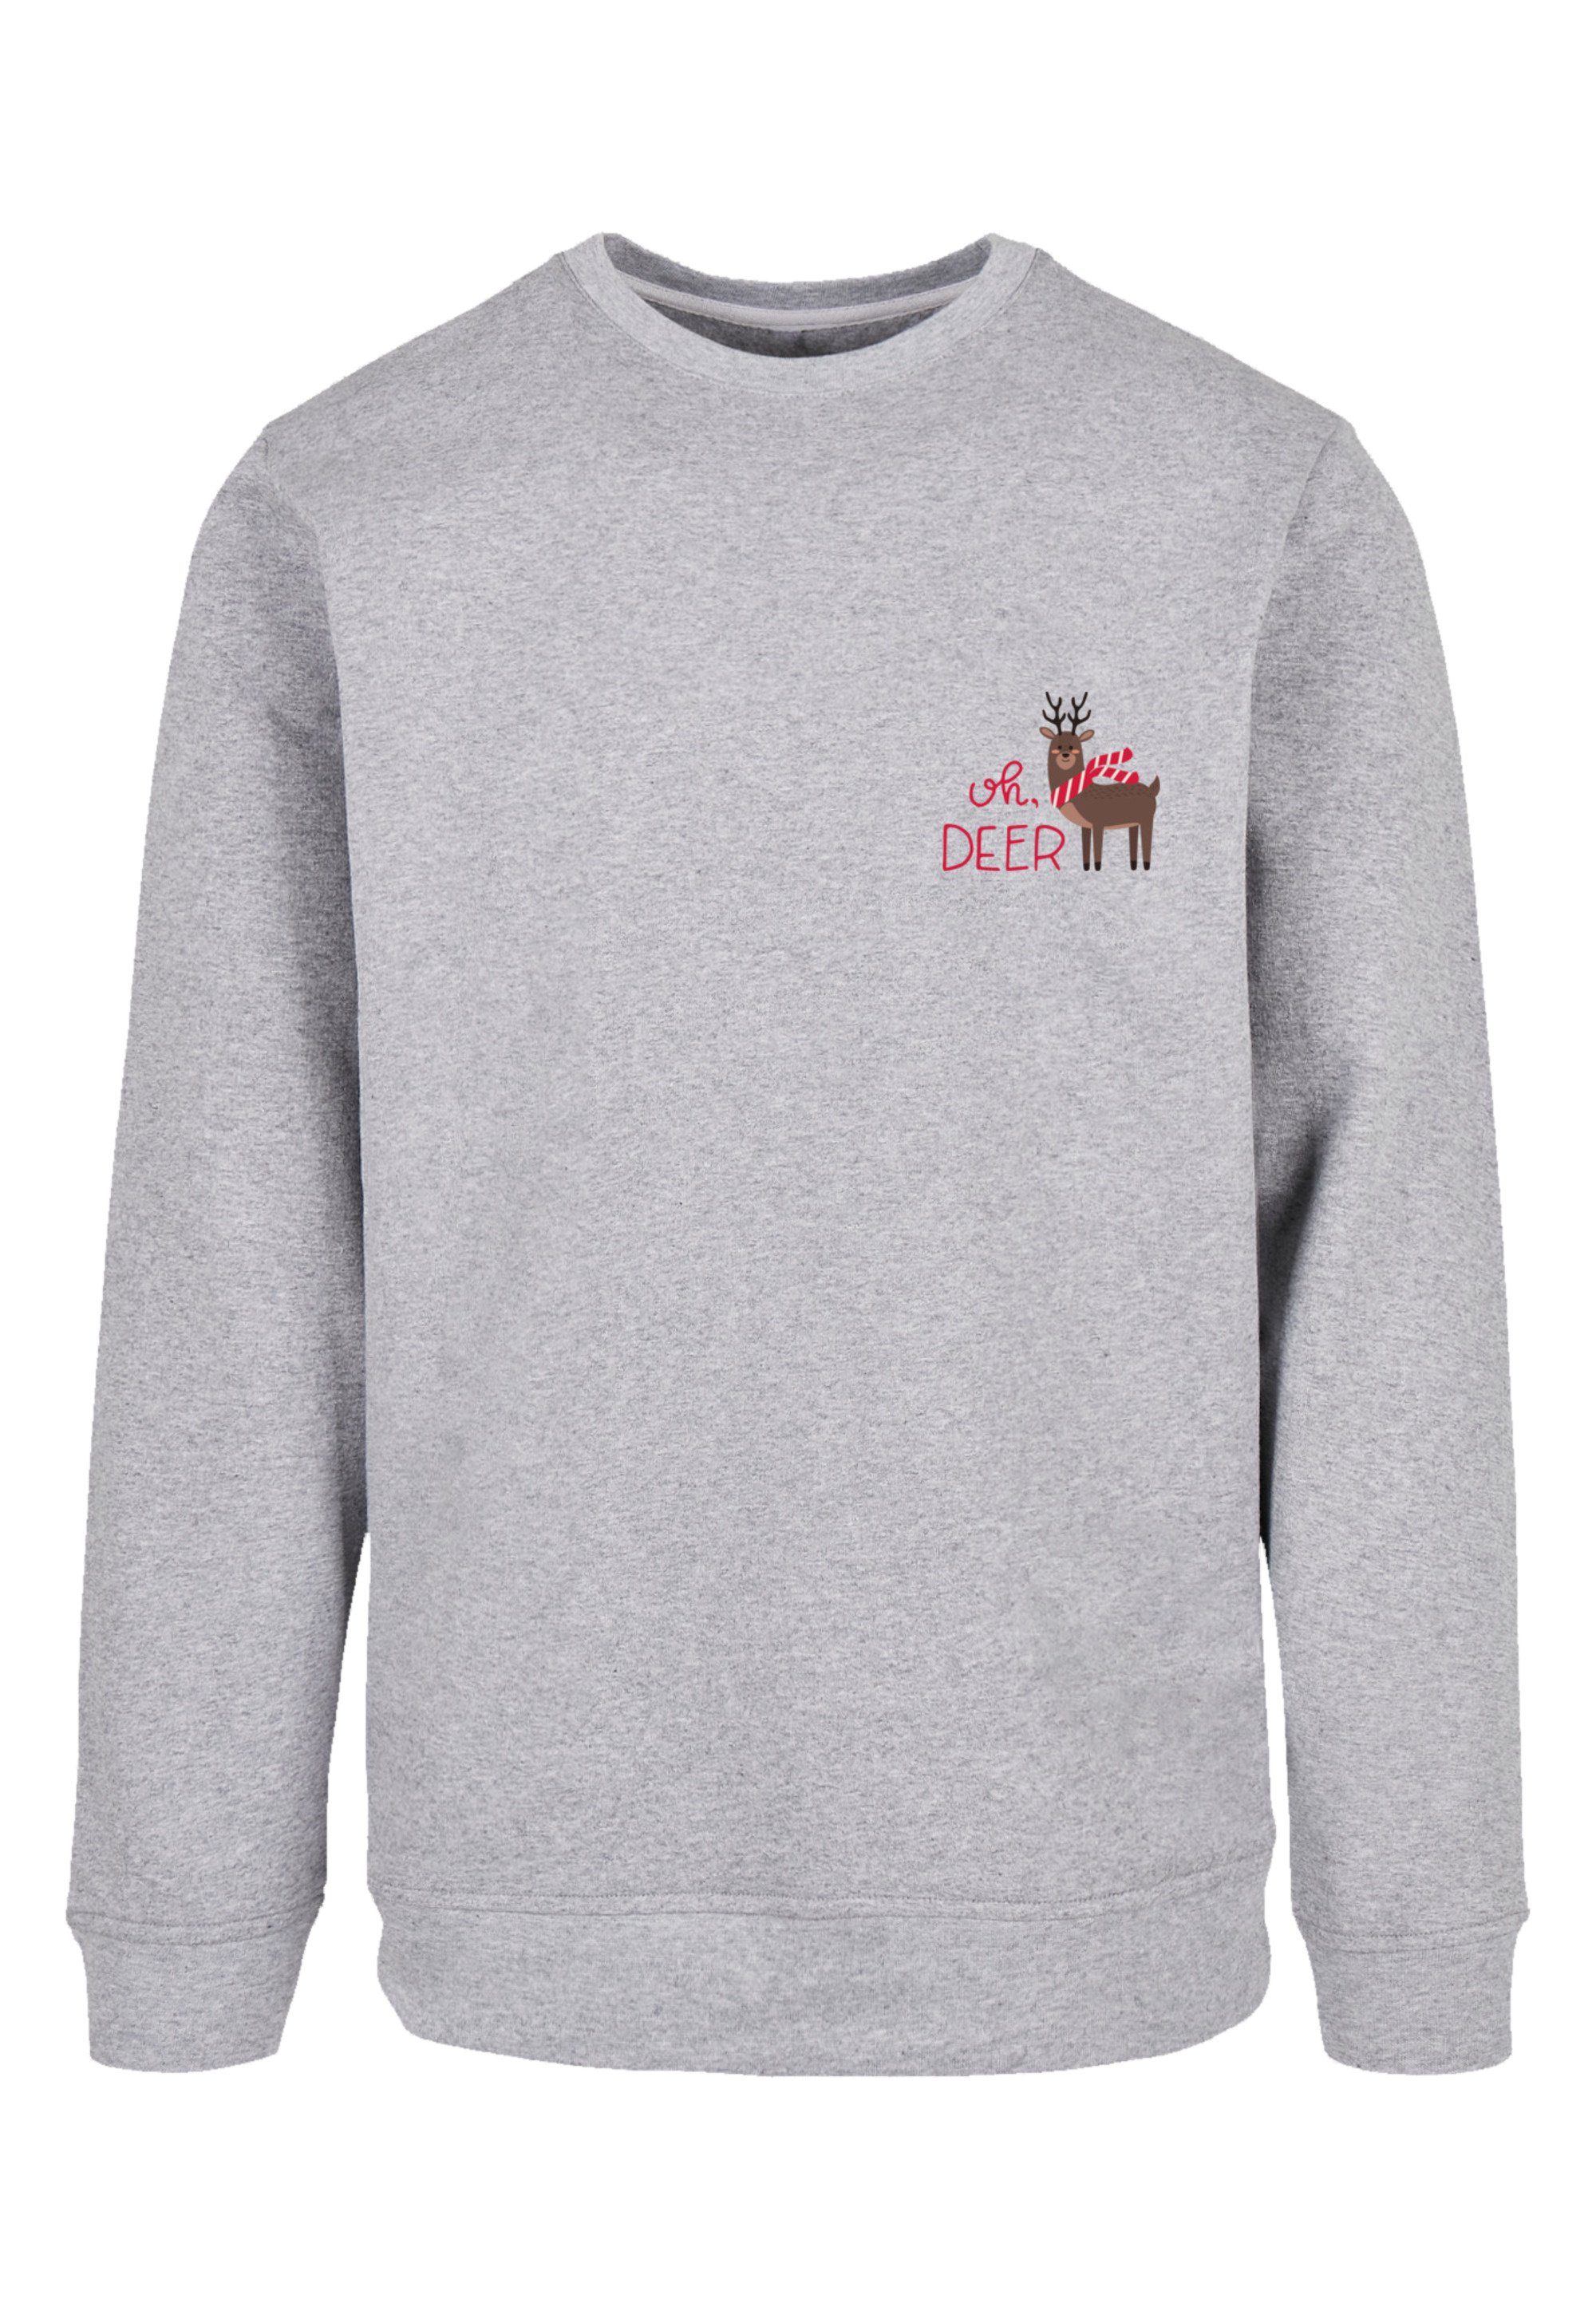 Deer mit Rock-Musik, Tragekomfort F4NT4STIC Band, Qualität, Premium Sweatshirt Bequemer Schnitt Christmas entspanntem